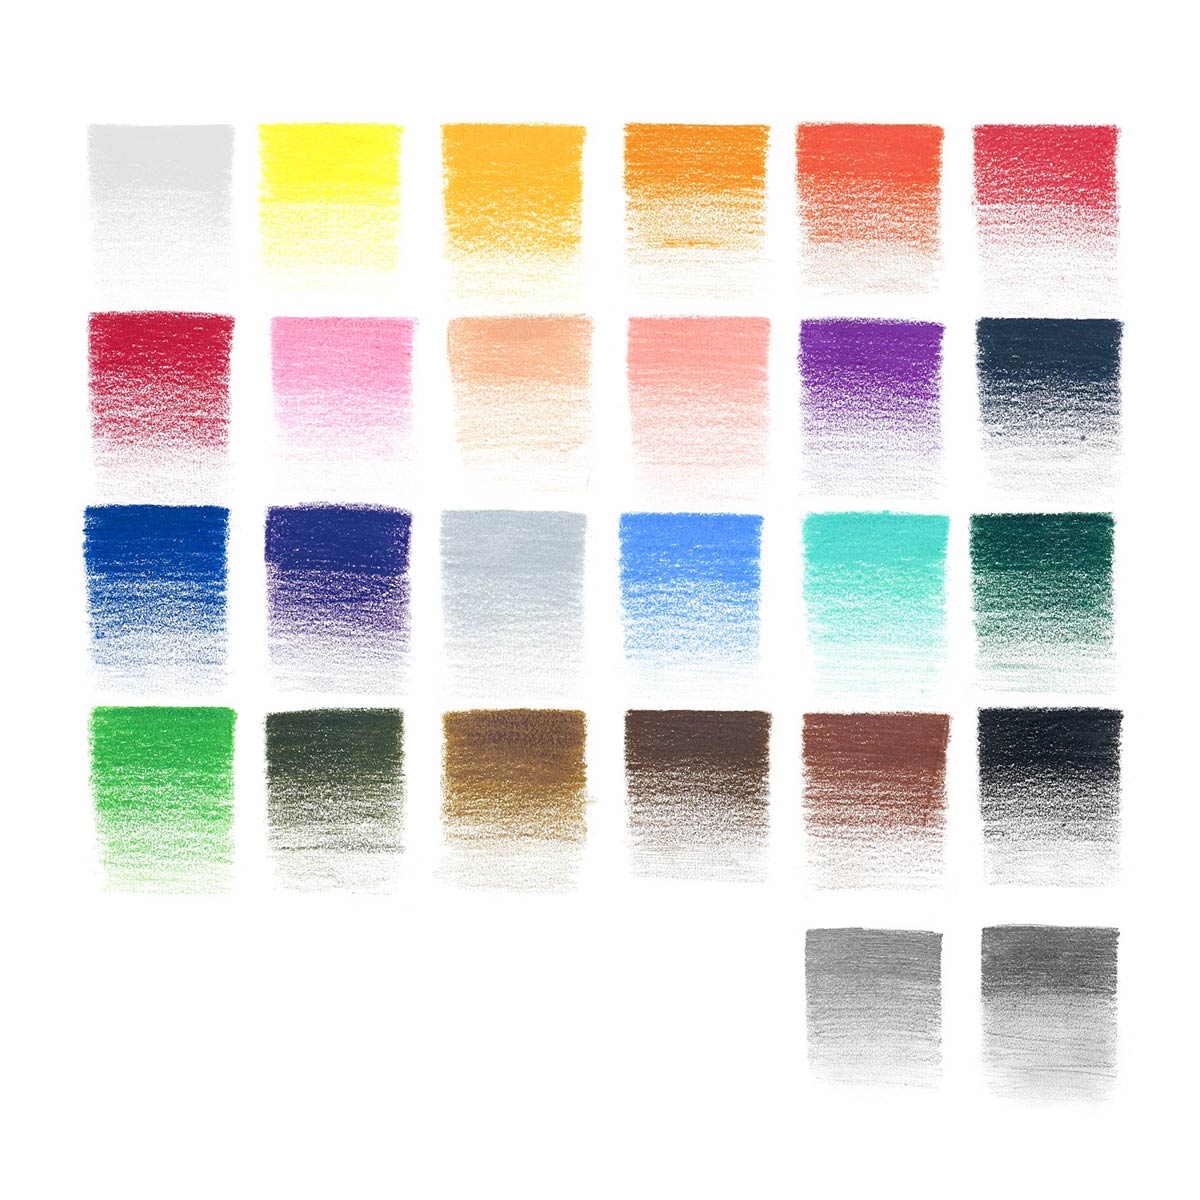 Winsor Newton - Studio Collection Colour  Pencils Wallet Set